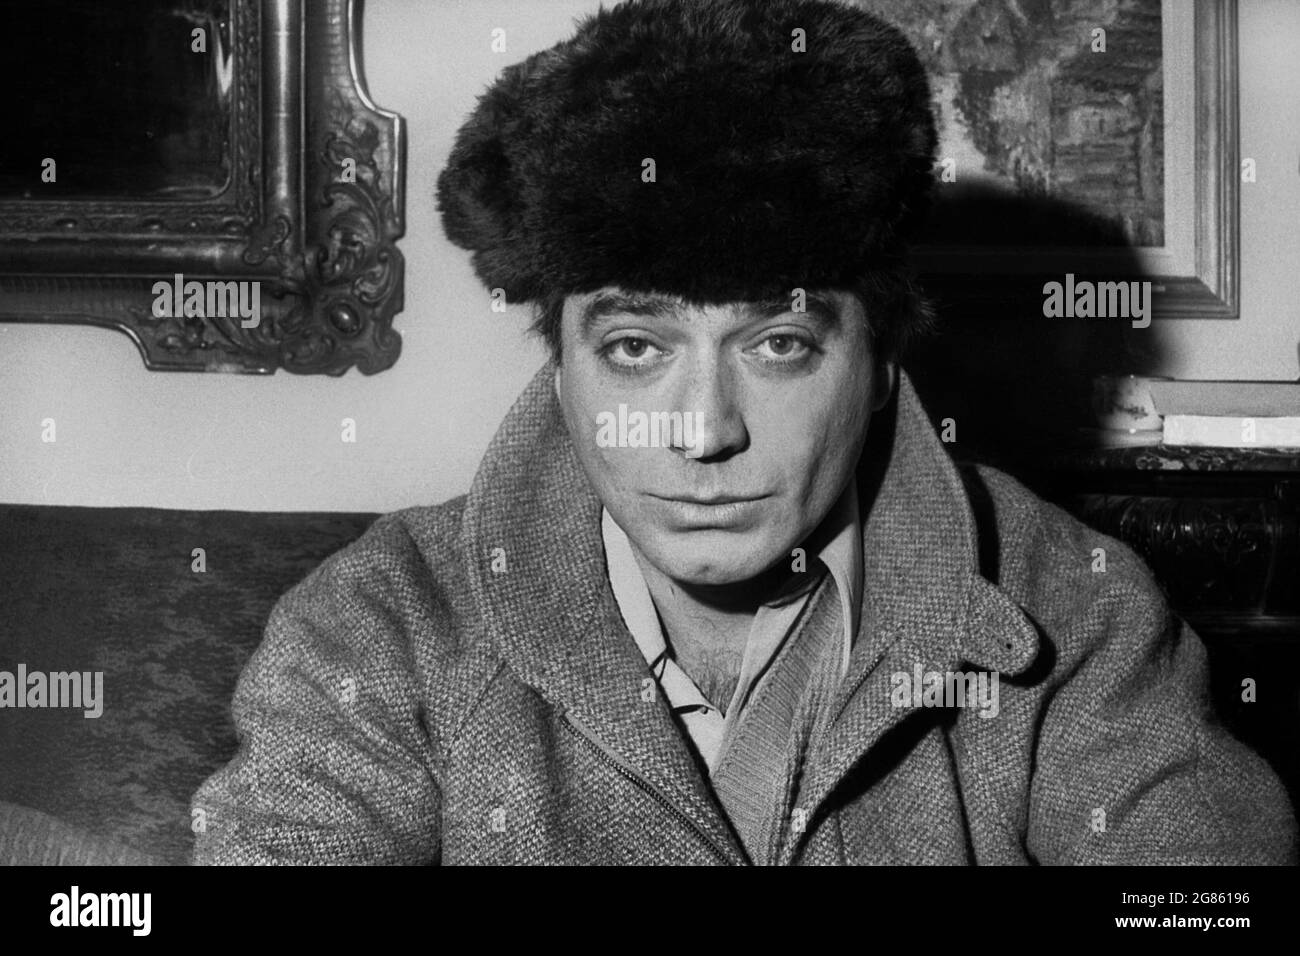 Ritratto dell'attore rumeno Alexandru RepAN, circa 1980 Foto Stock